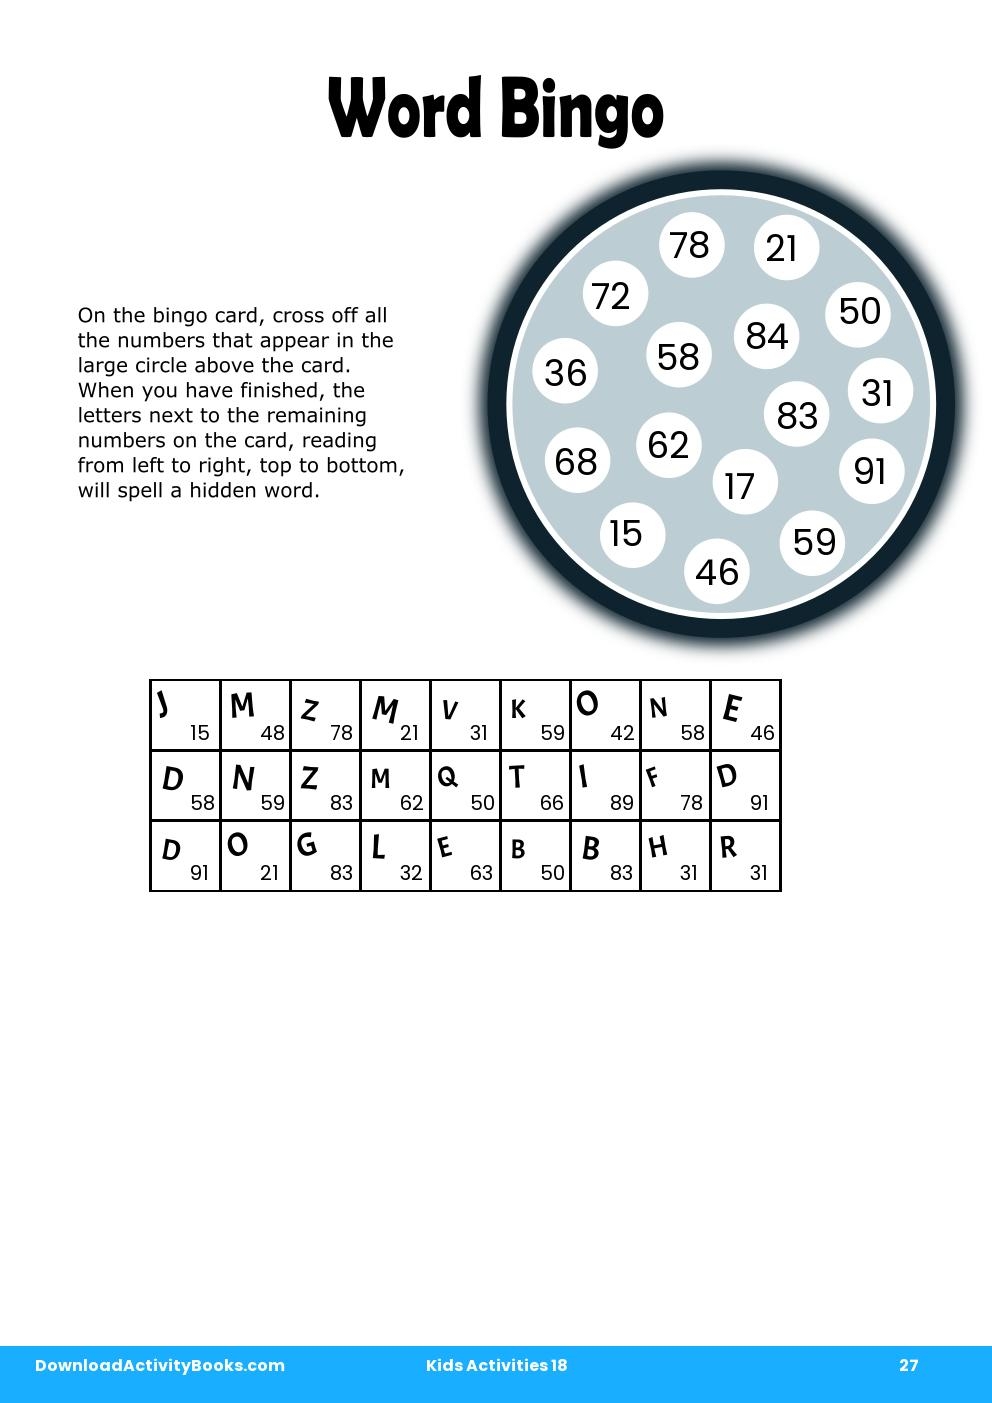 Word Bingo in Kids Activities 18